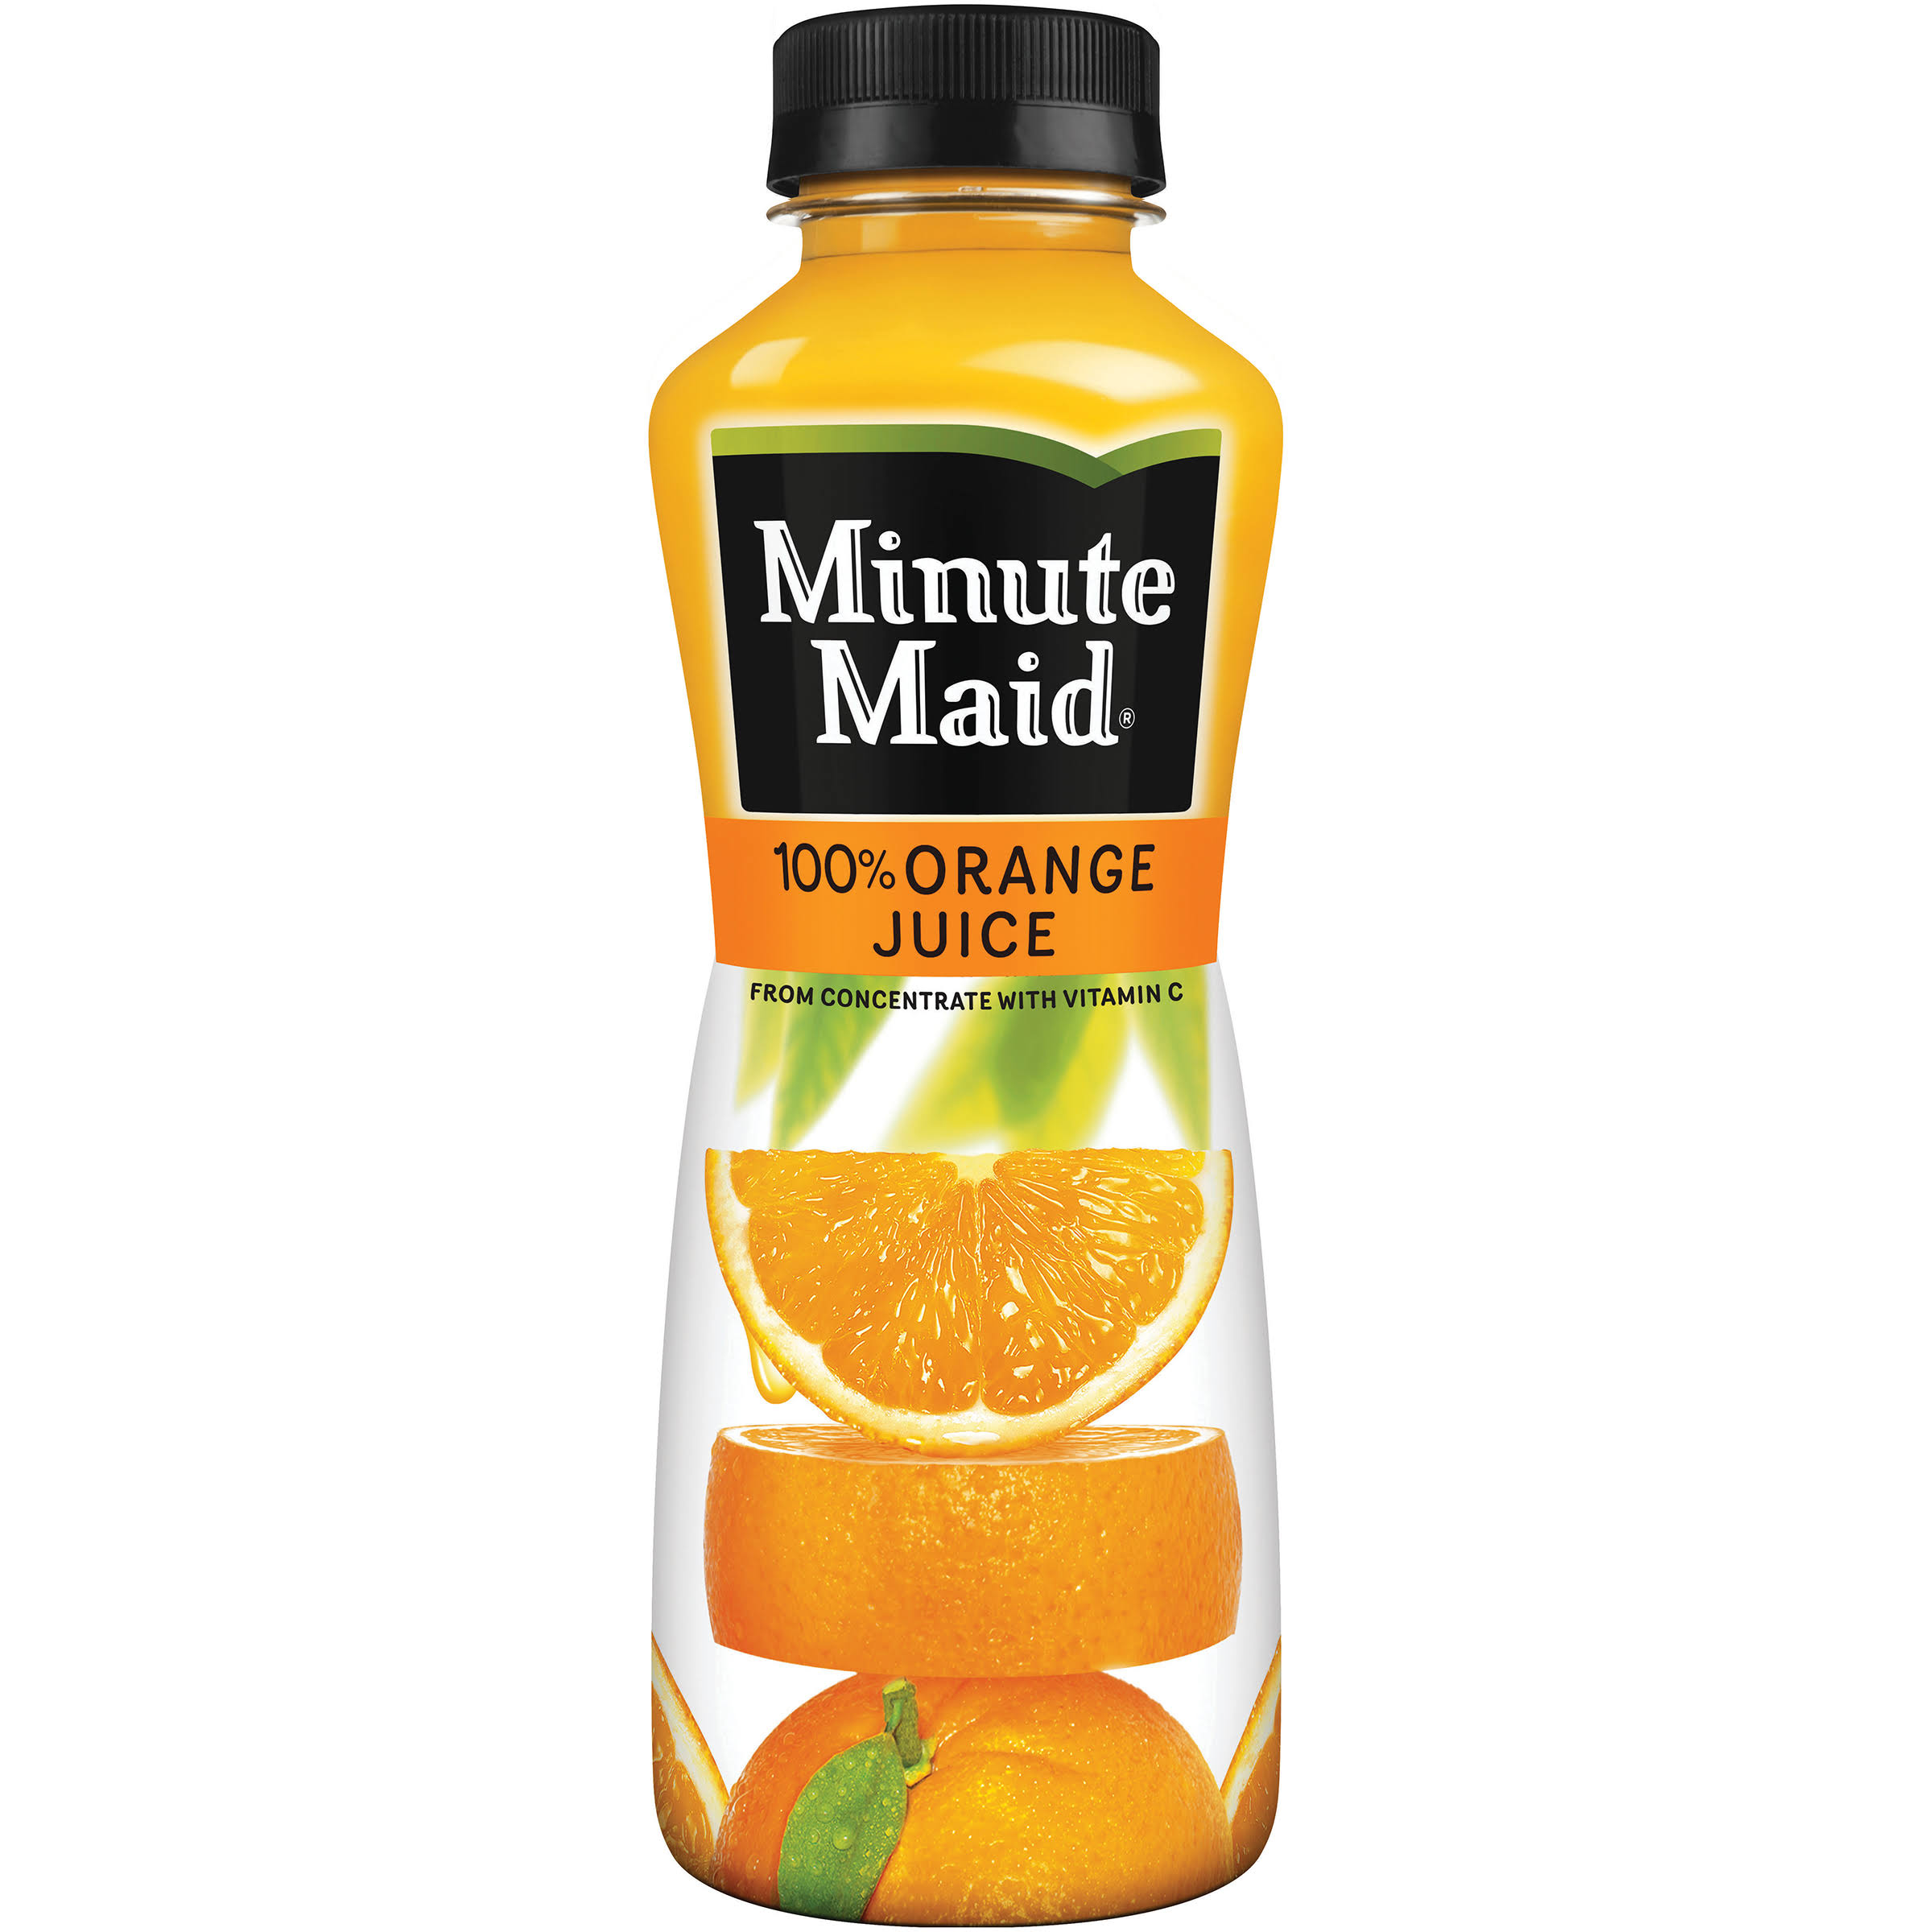 Minute Maid 100% Orange Juice - 12 fl oz